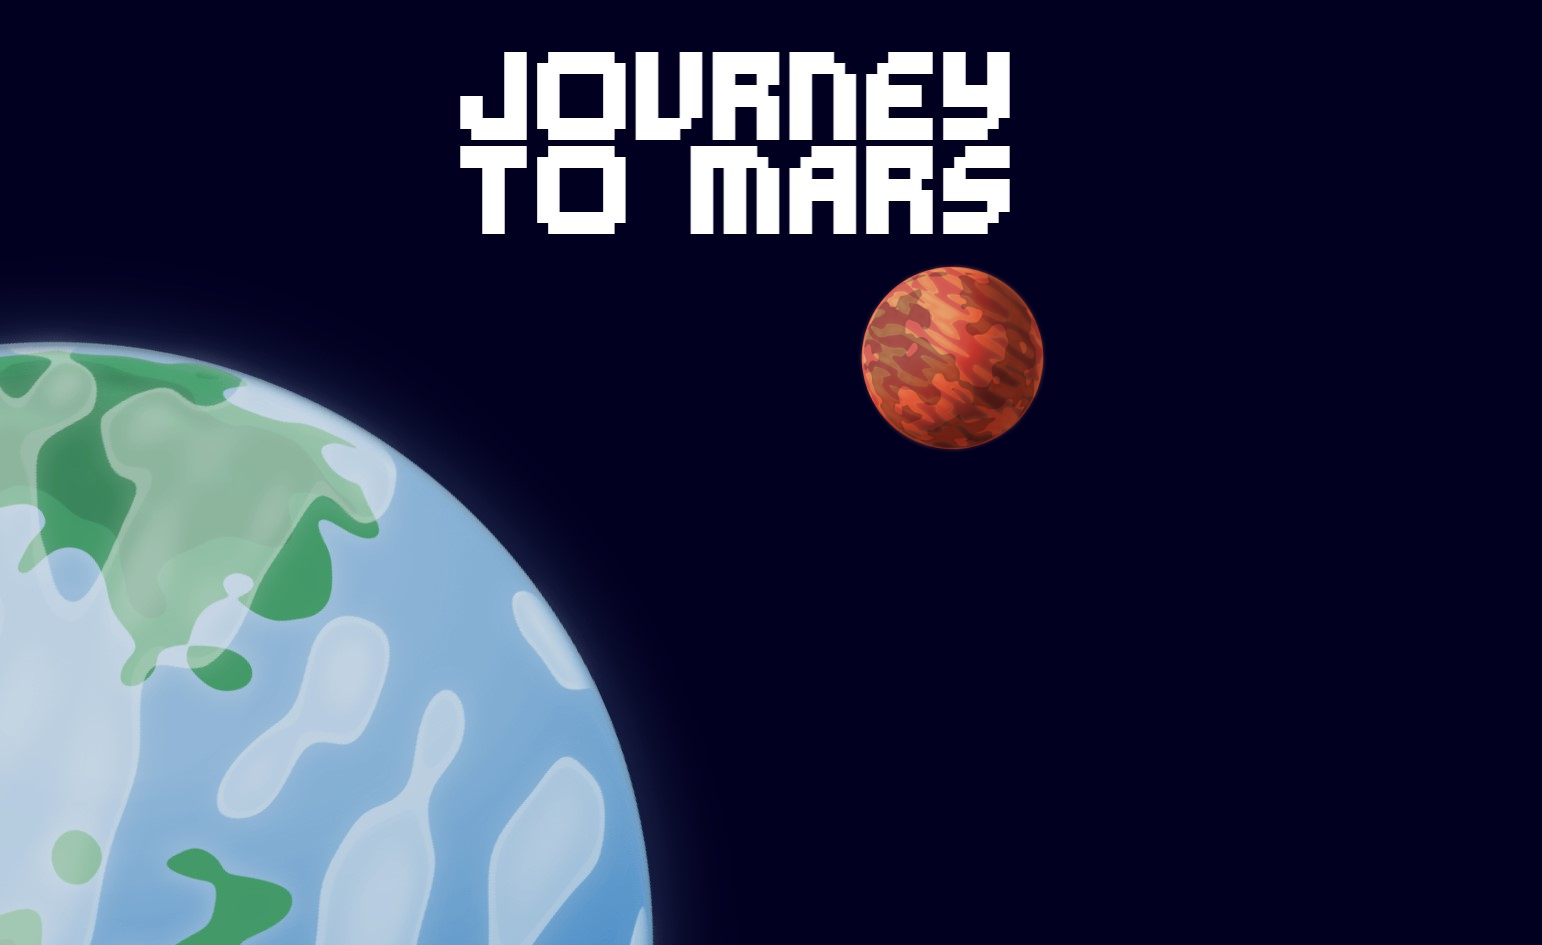 Journey To Mars